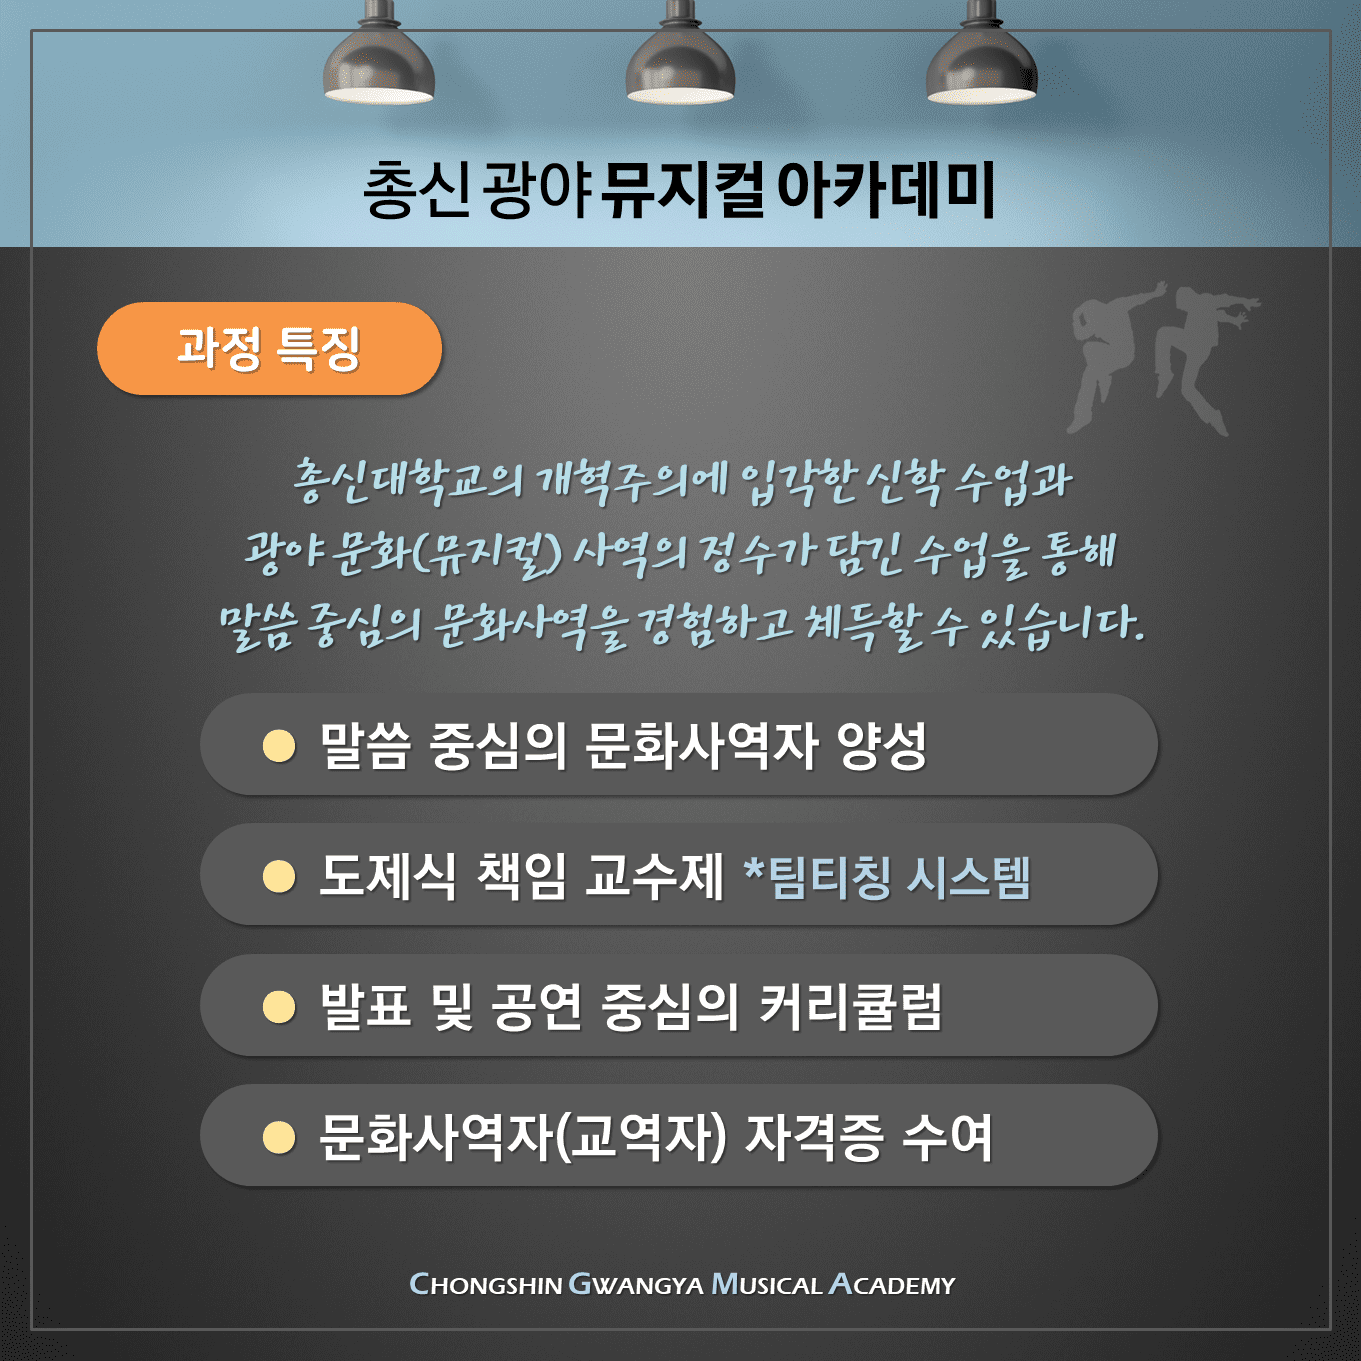 총신 광야 뮤지컬 아카데미3